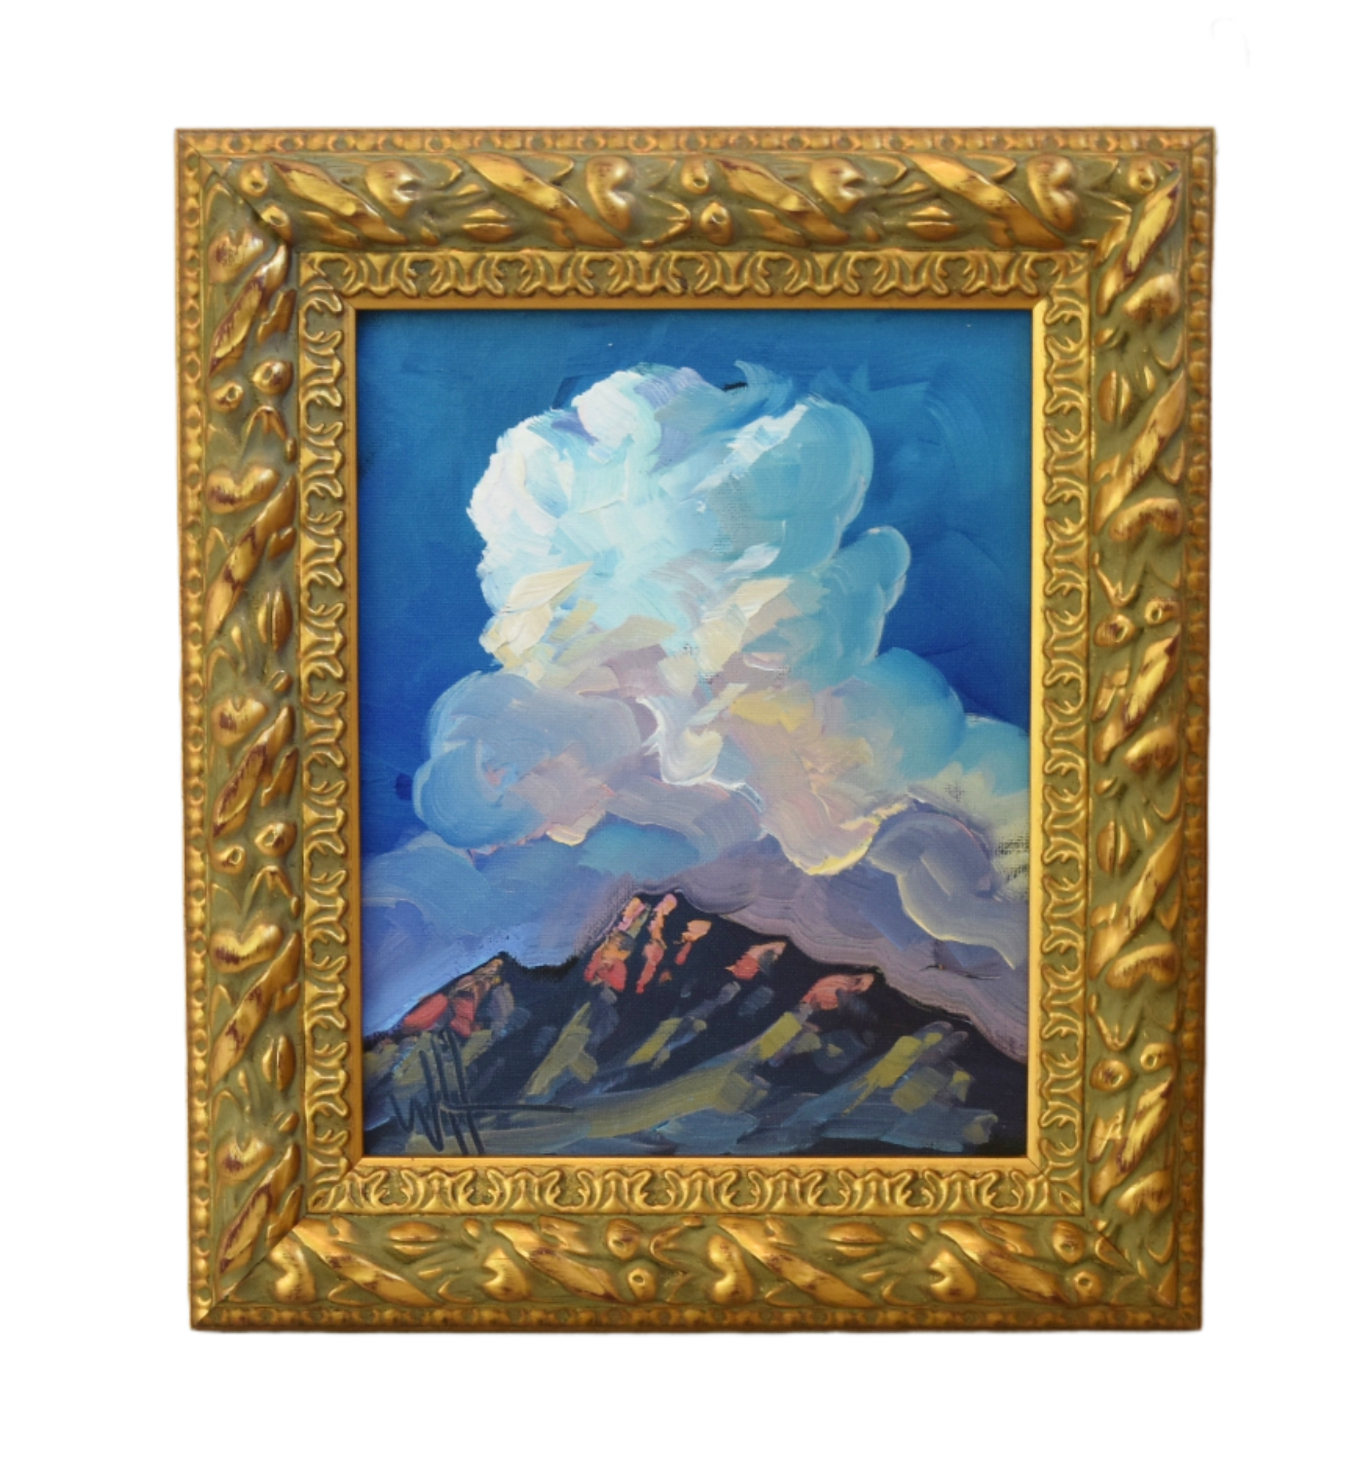 Wm. Hawkins Landscape & Clouds Painting~P77692855